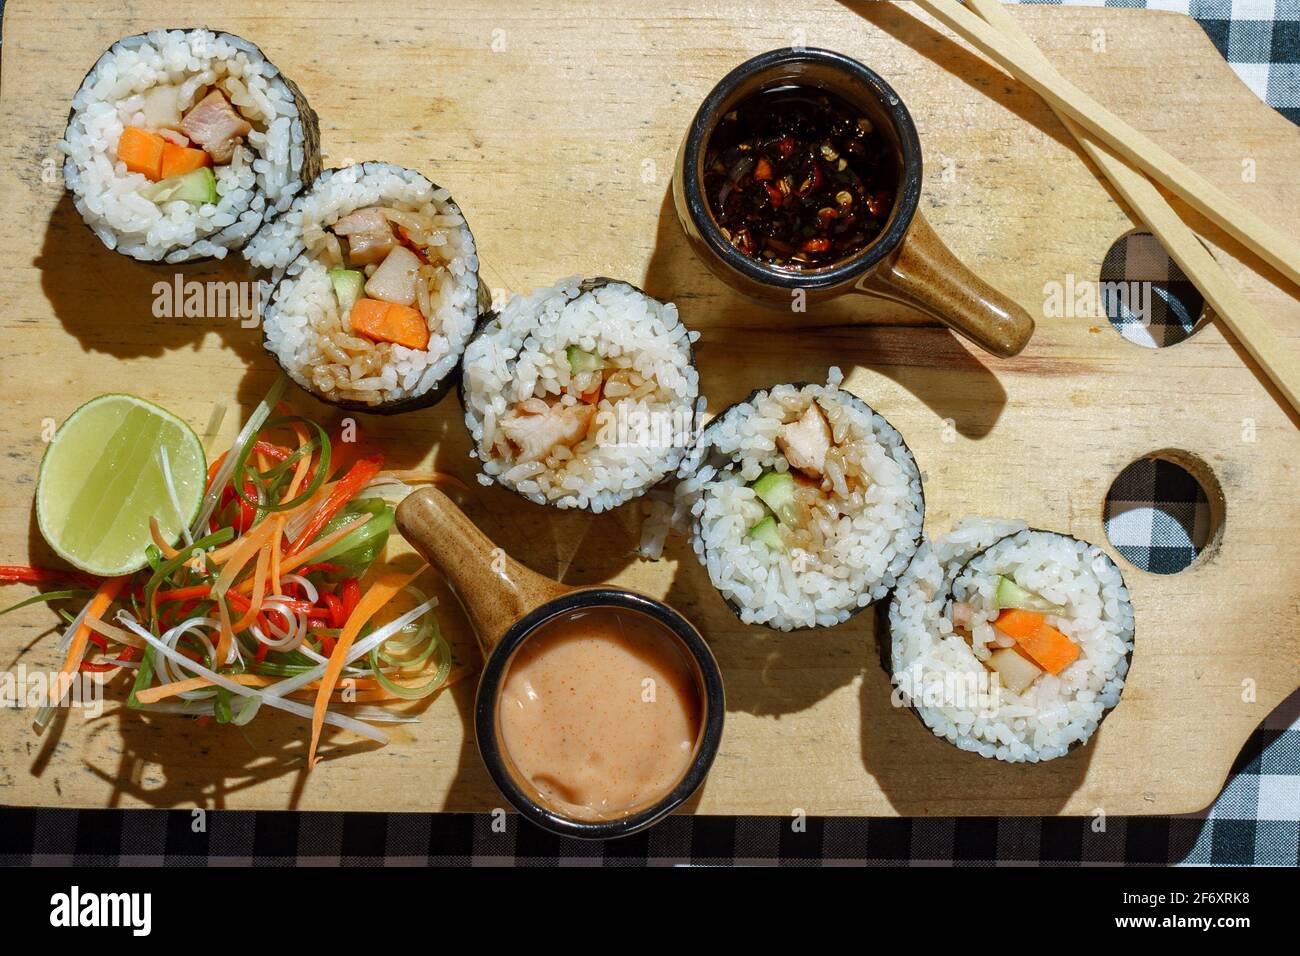 Vue en hauteur des petits pains maki à sushis sur une planche à découper avec chili et sauce épicée Banque D'Images